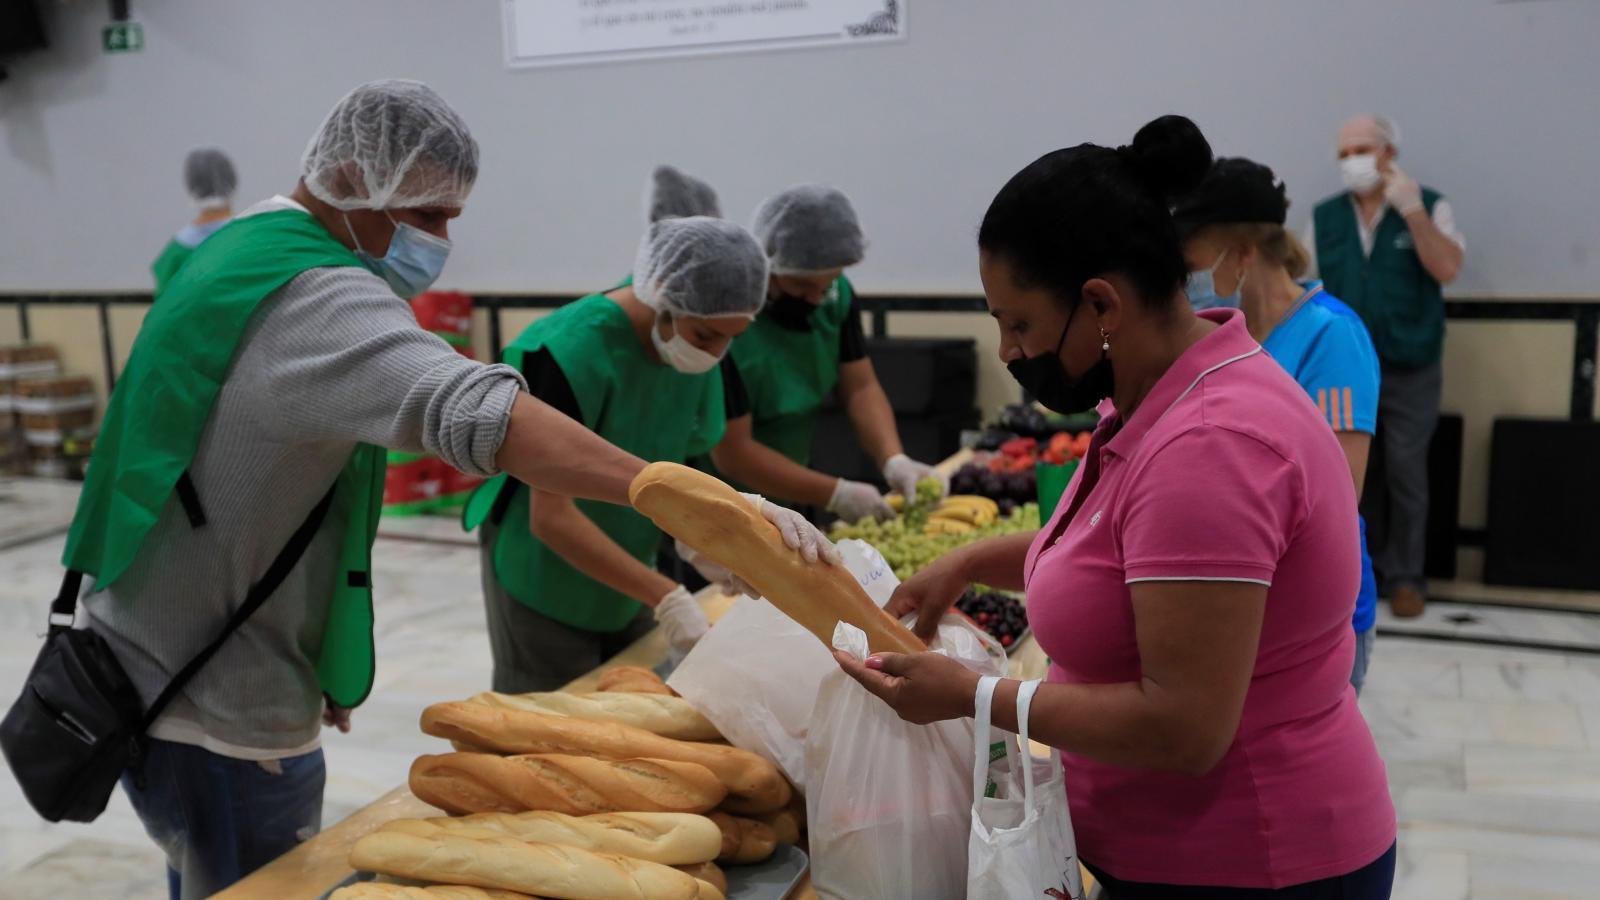 S. S. de Reyes recoge alimentos para las familias sin recursos tras la covid